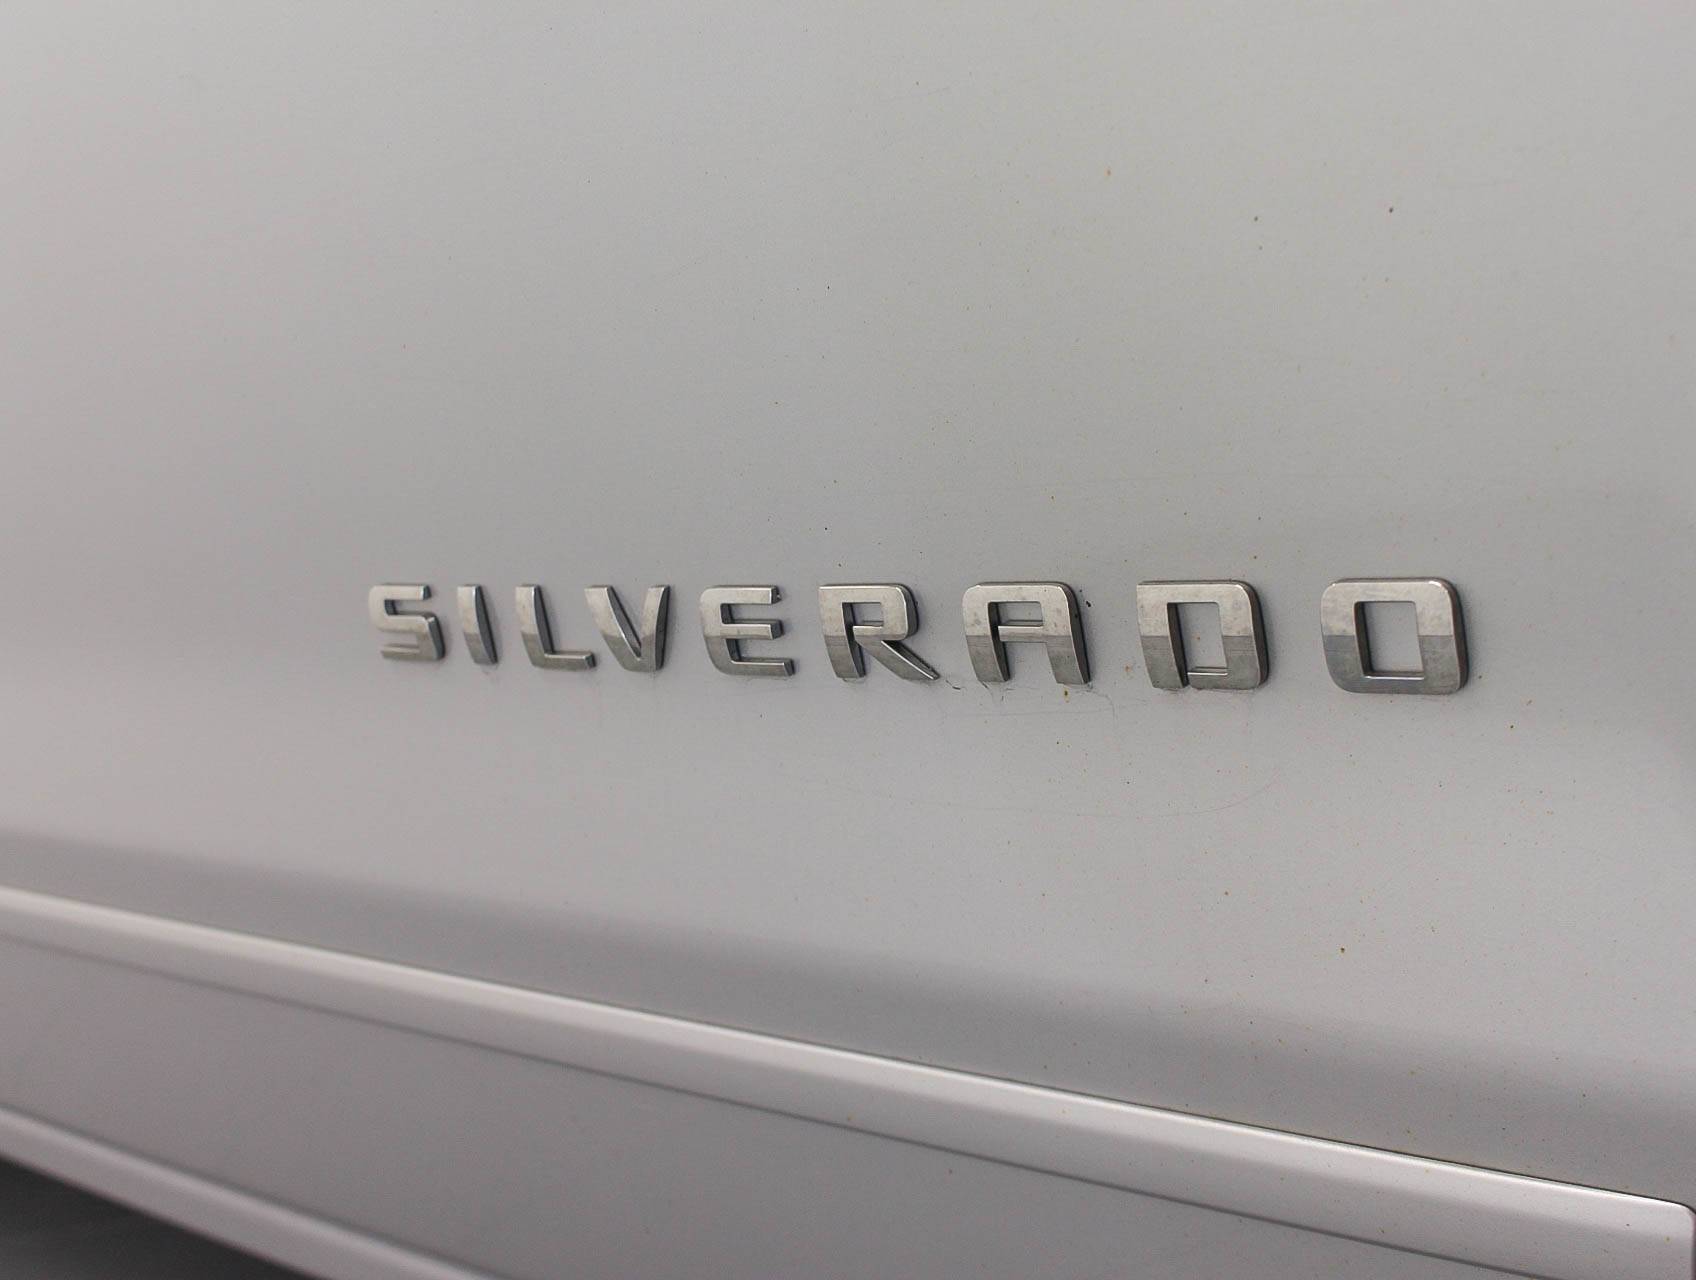 Florida Fine Cars - Used CHEVROLET SILVERADO 2015 HOLLYWOOD Lt1 4x4